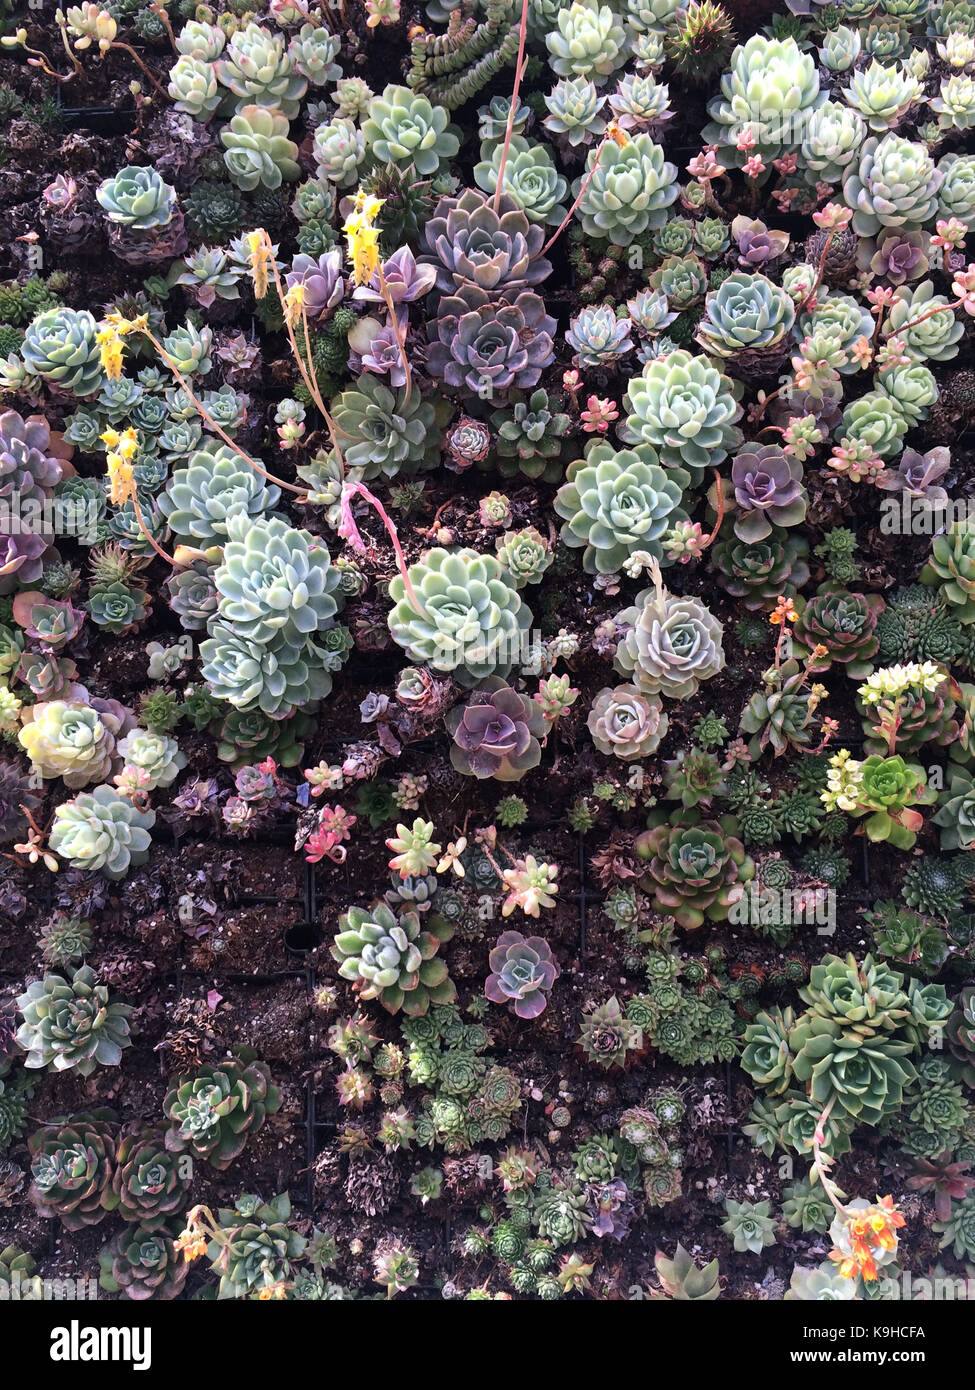 Plantes Succulentes dans un mur végétal dense et dynamique Banque D'Images